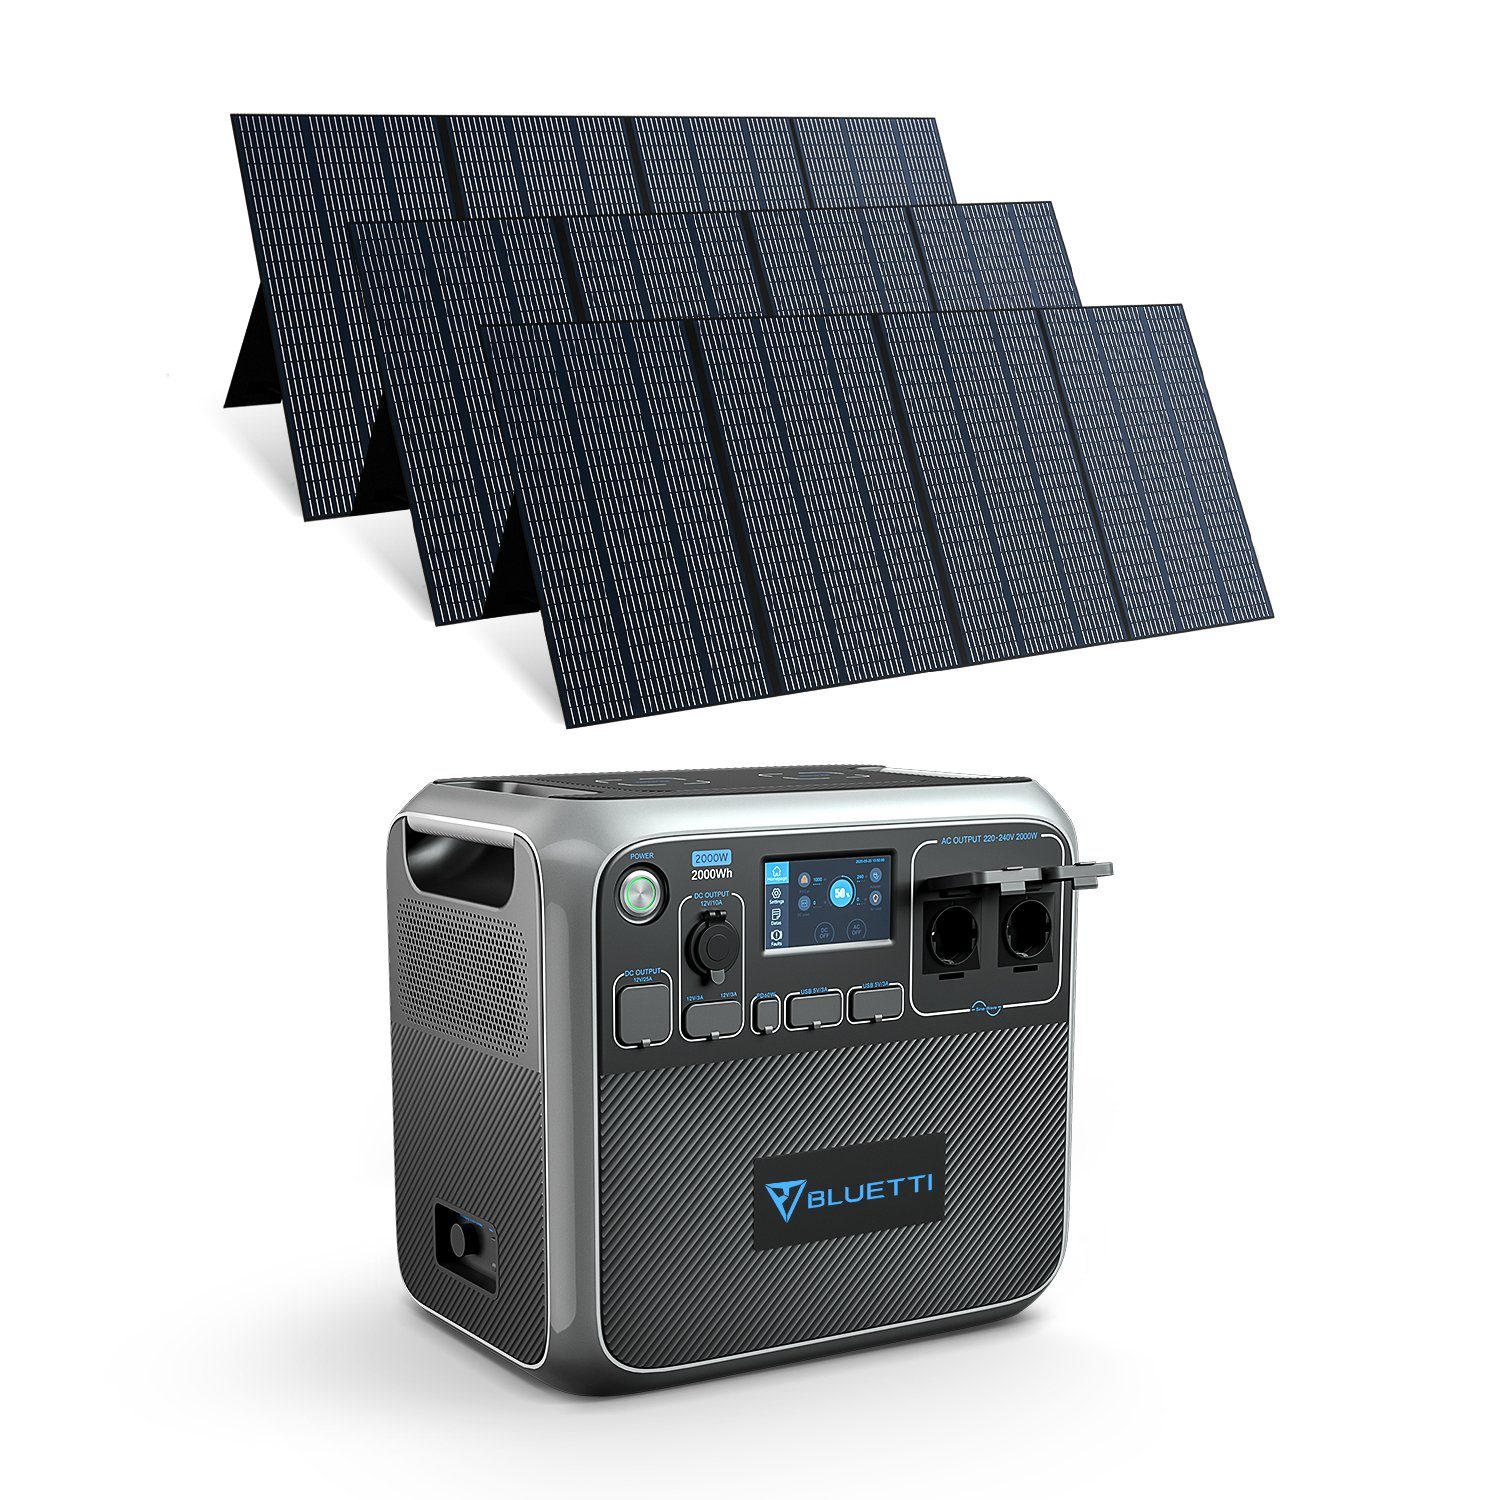 BLUETTI Stromerzeuger AC200P+3*PV350, (1-tlg), 350W Solarpanel